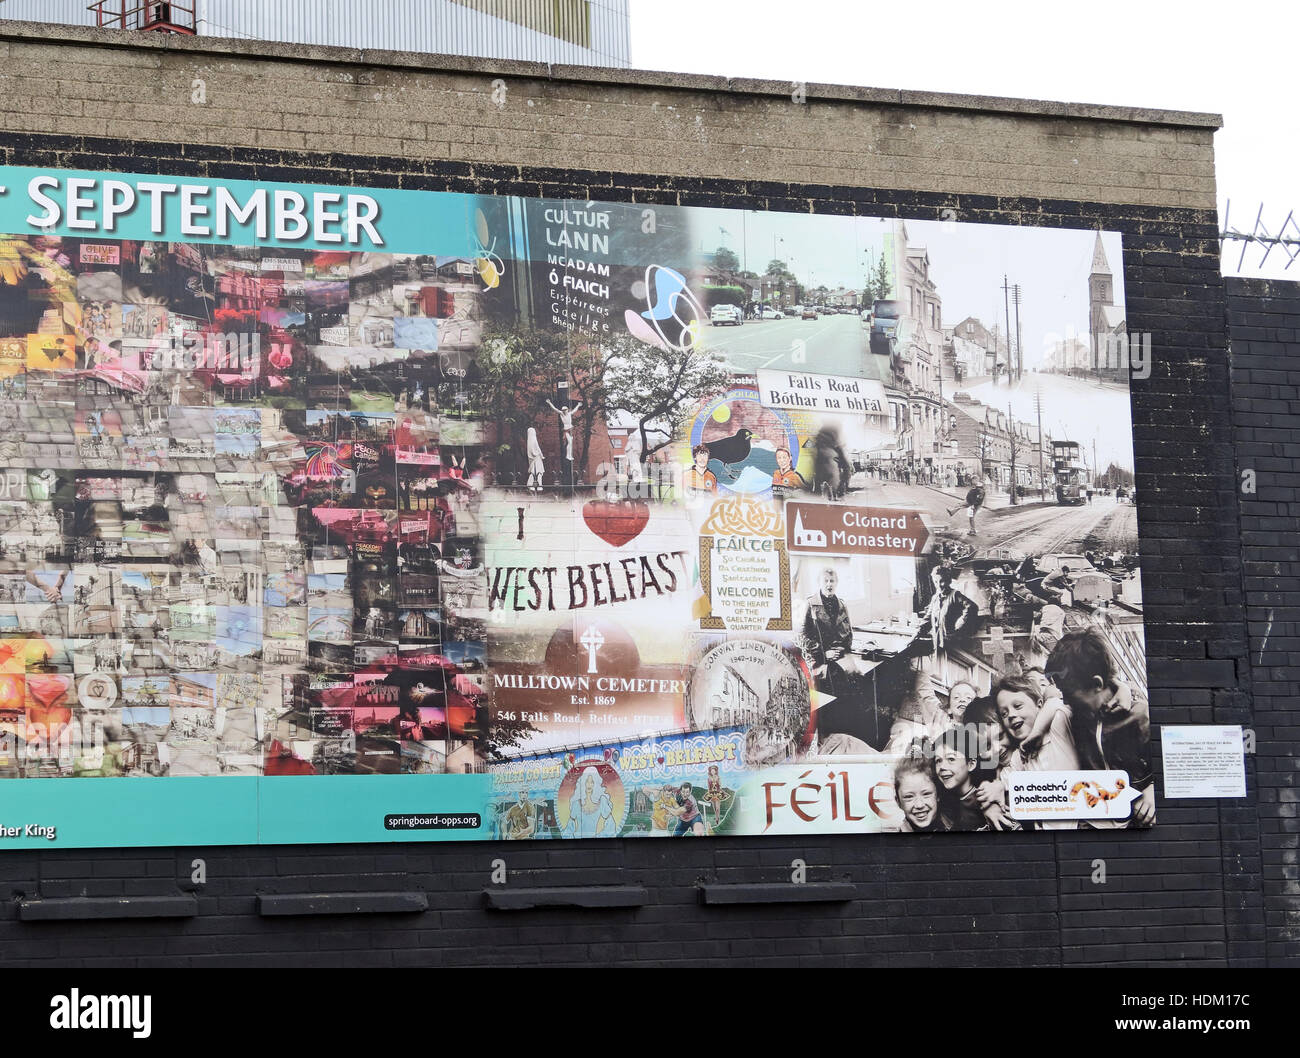 Falls Rd storia,Belfast International parete di pace,Cupar modo,West Belfast,NI,UK Foto Stock